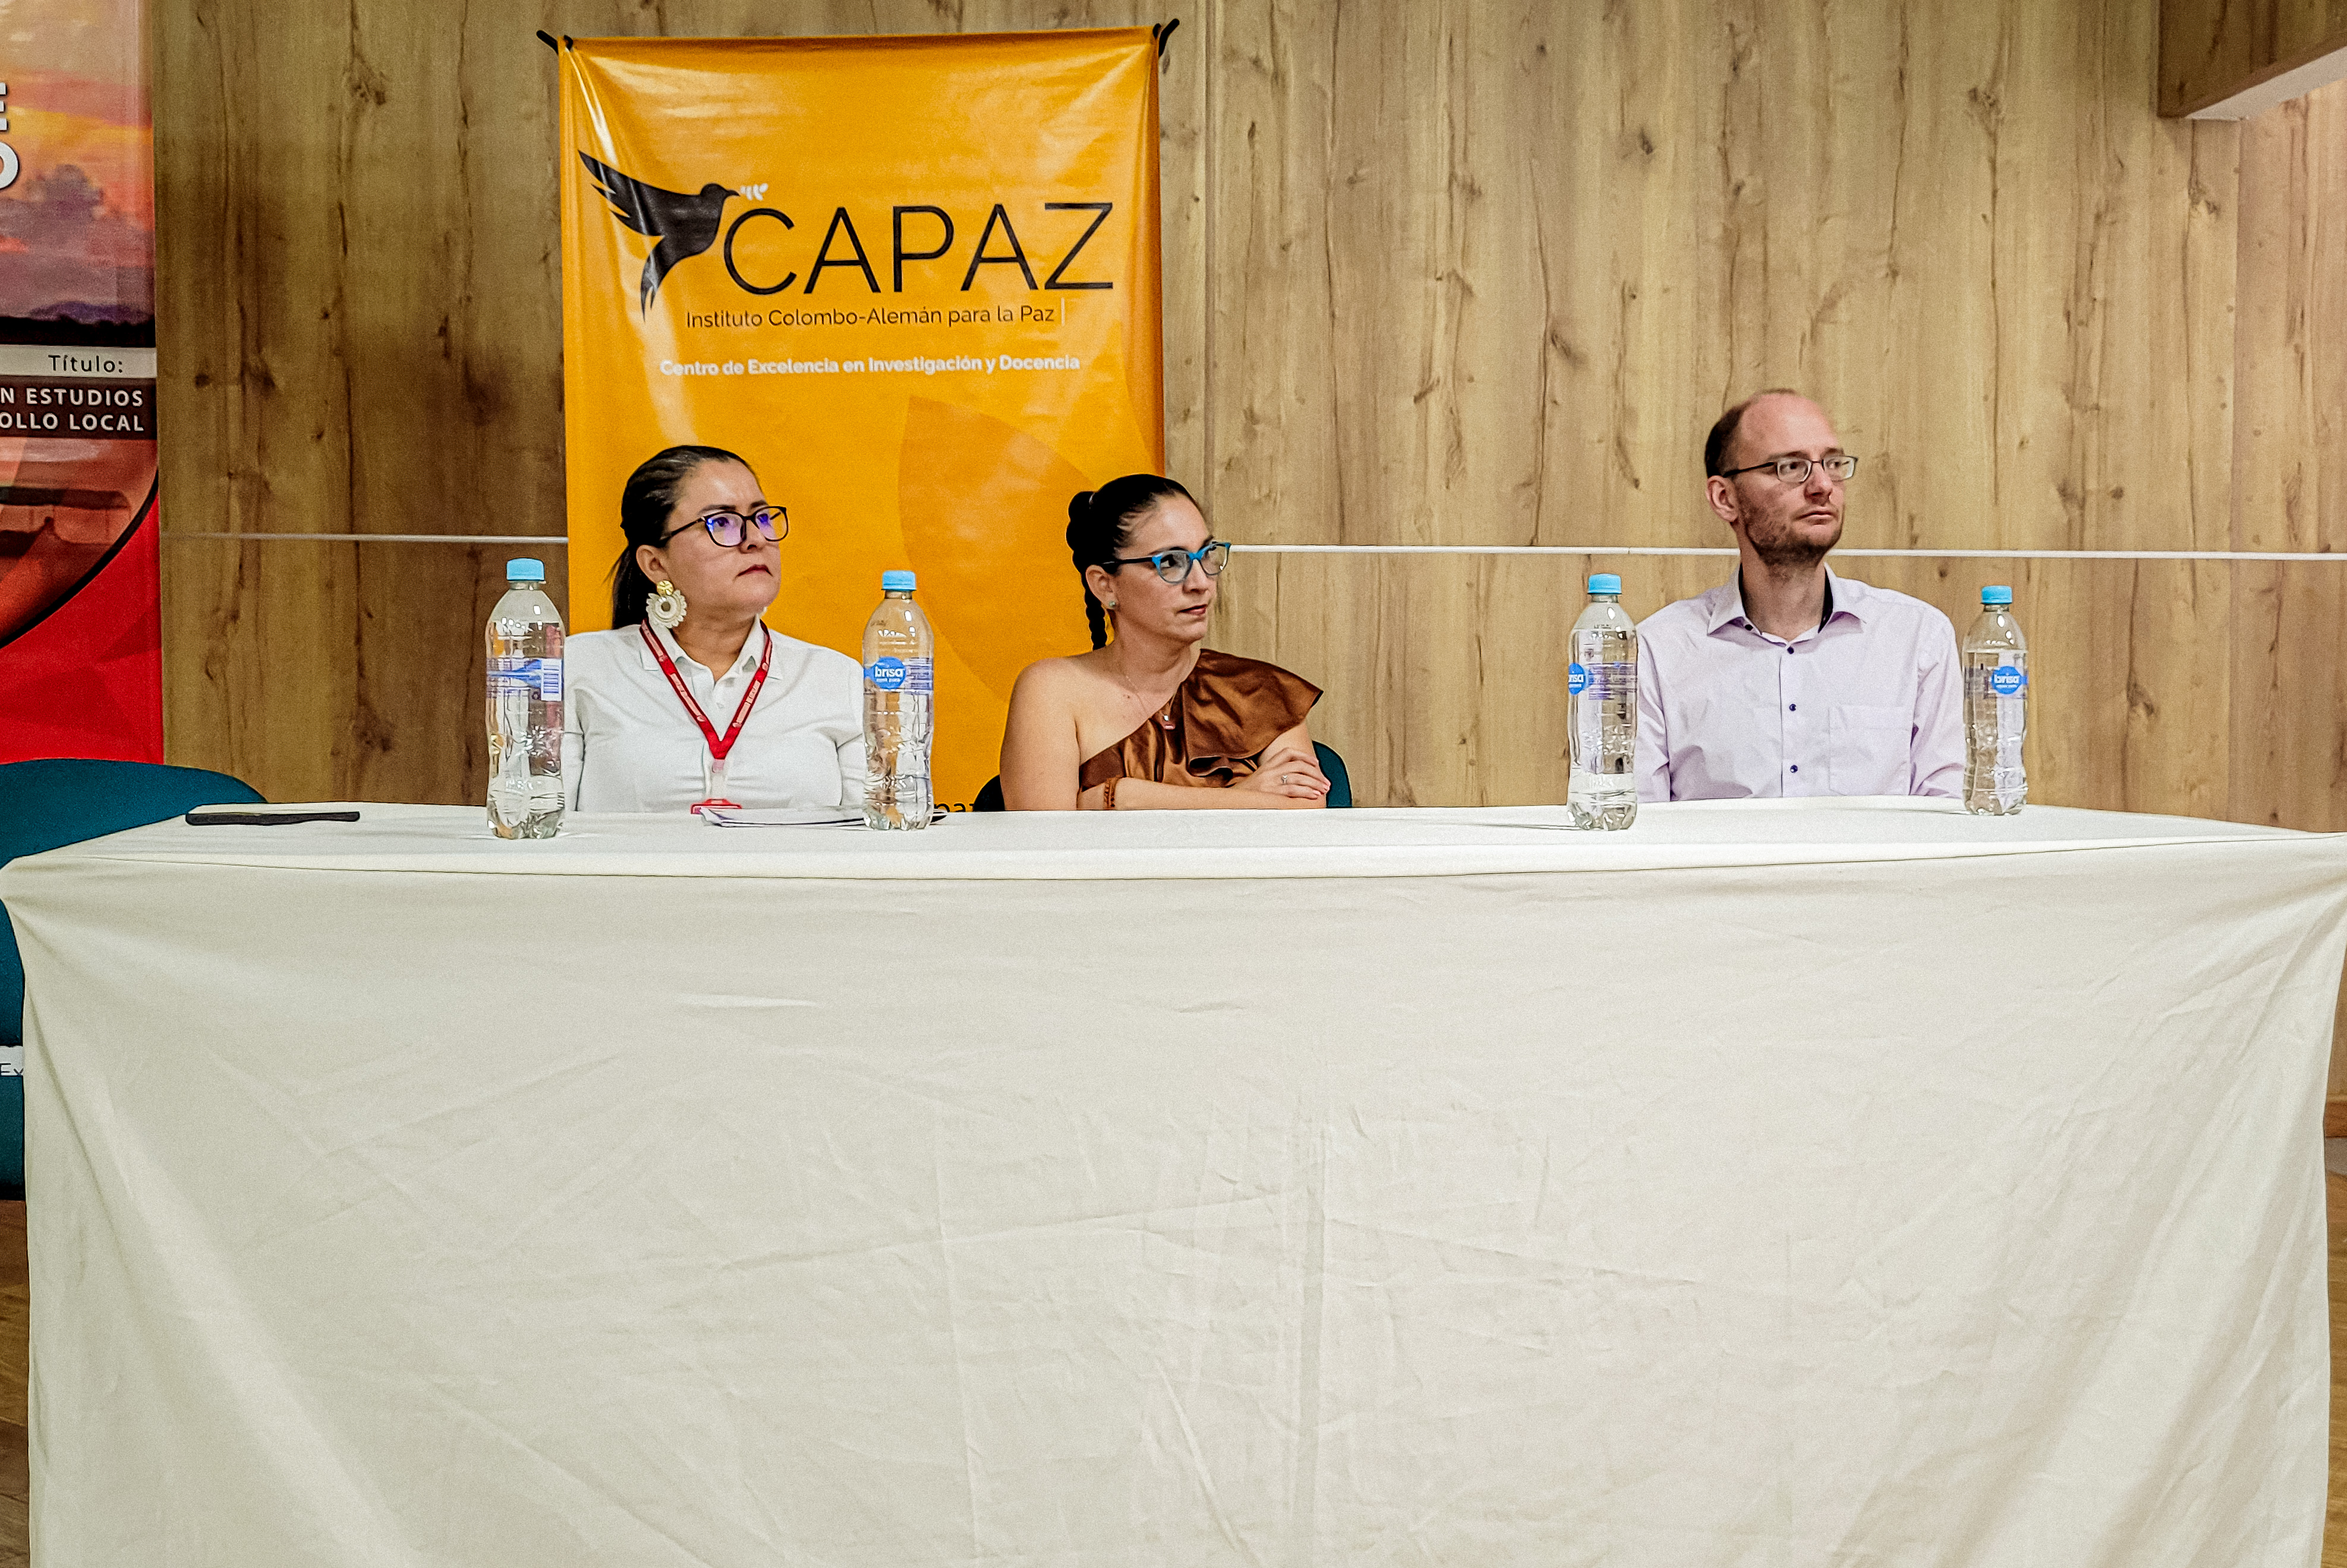 Unillanos realizó Conversatorio sobre Memoria y verdad en asocio con el Instituto Colombo-Alemán para la Paz - CAPAZ